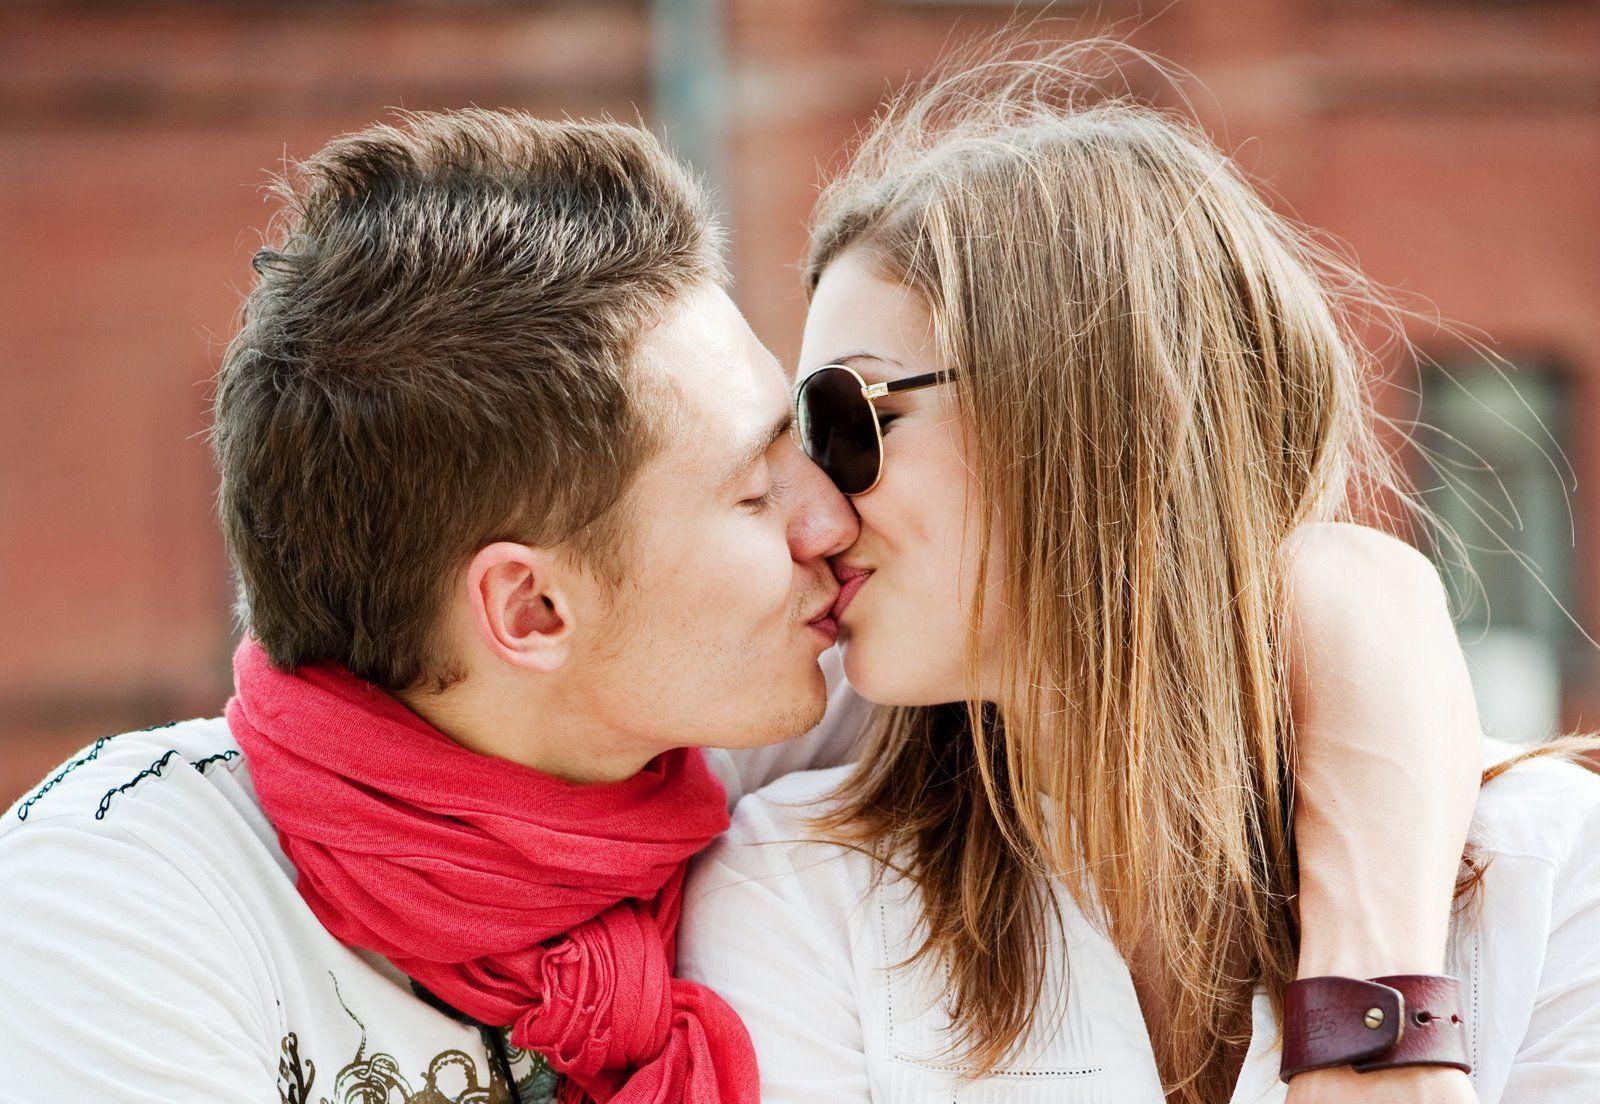 Cute Romantic Love kiss Image